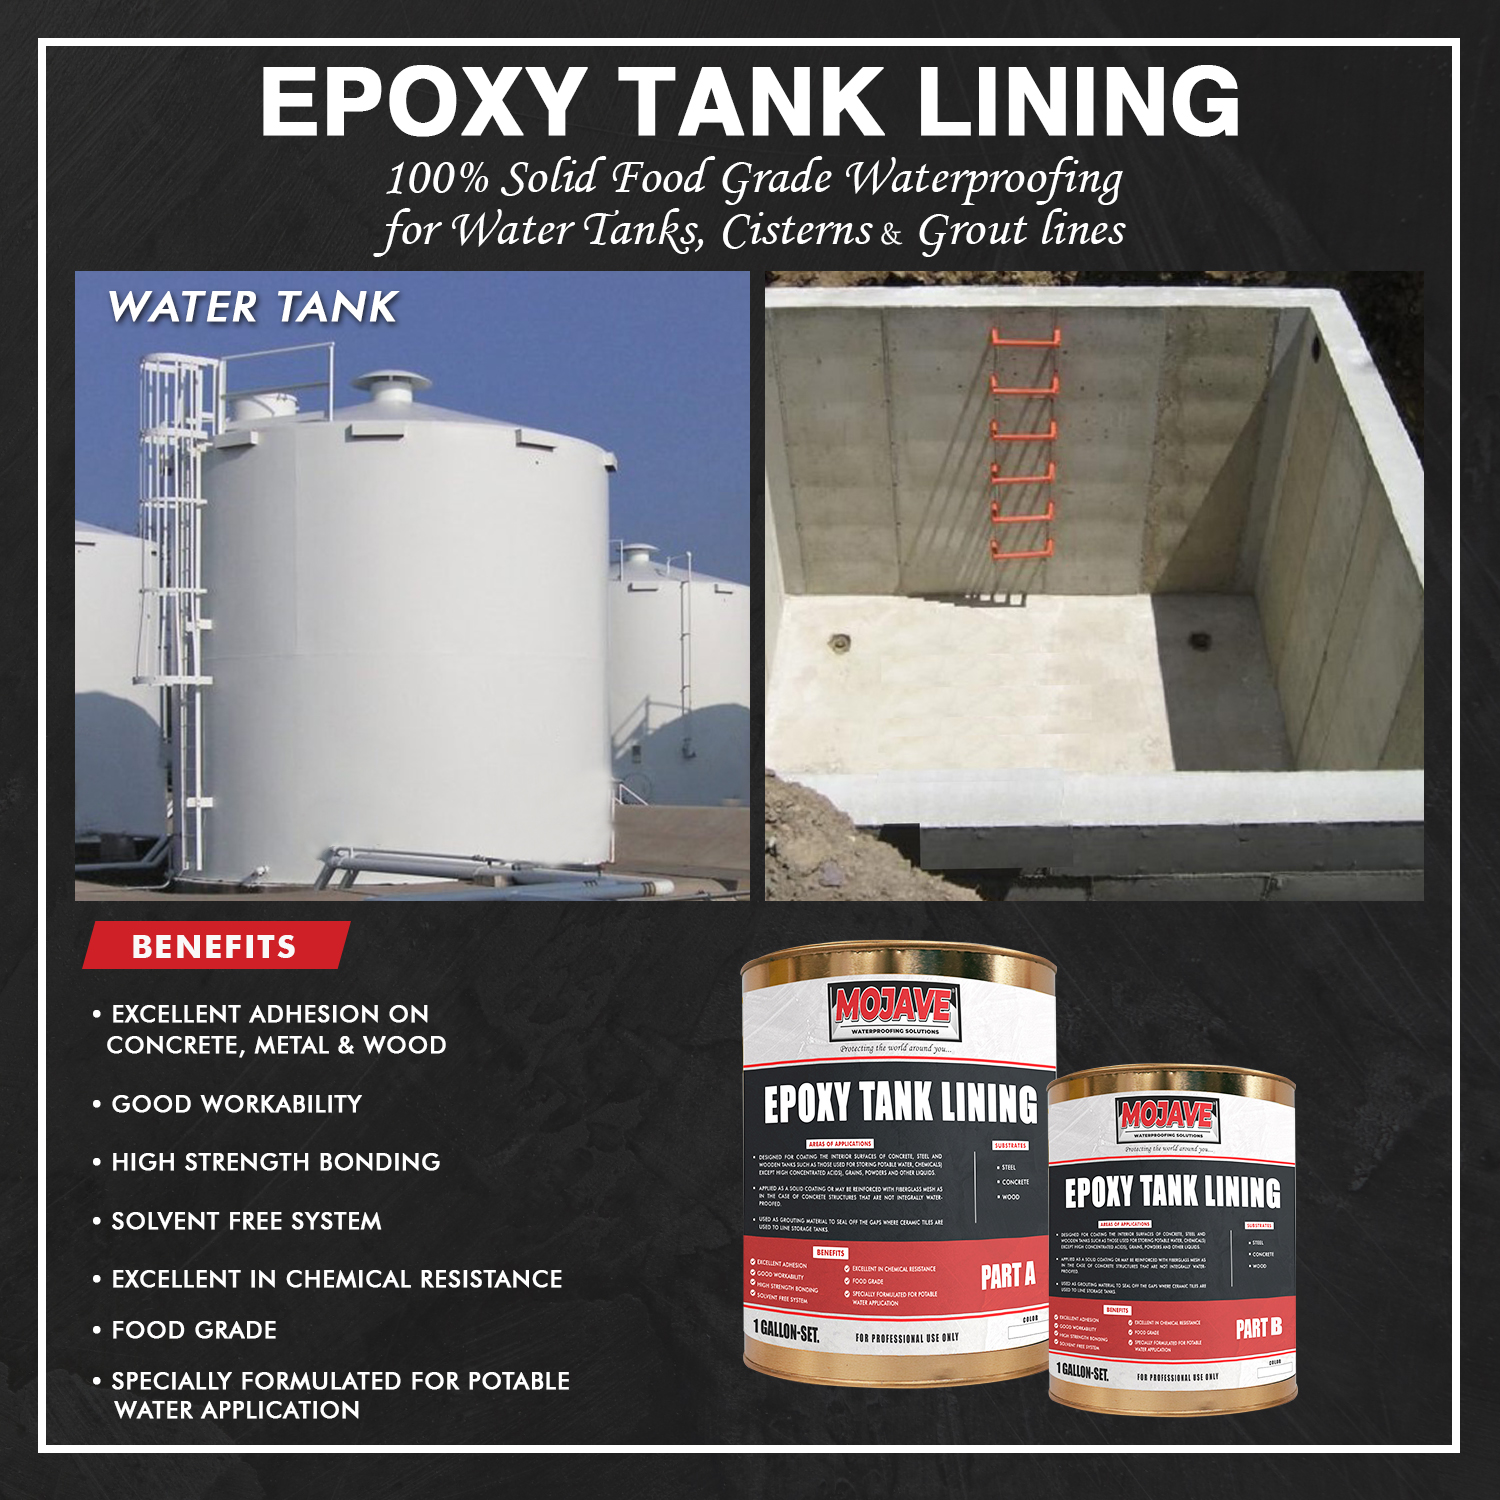 Epoxy tank lining